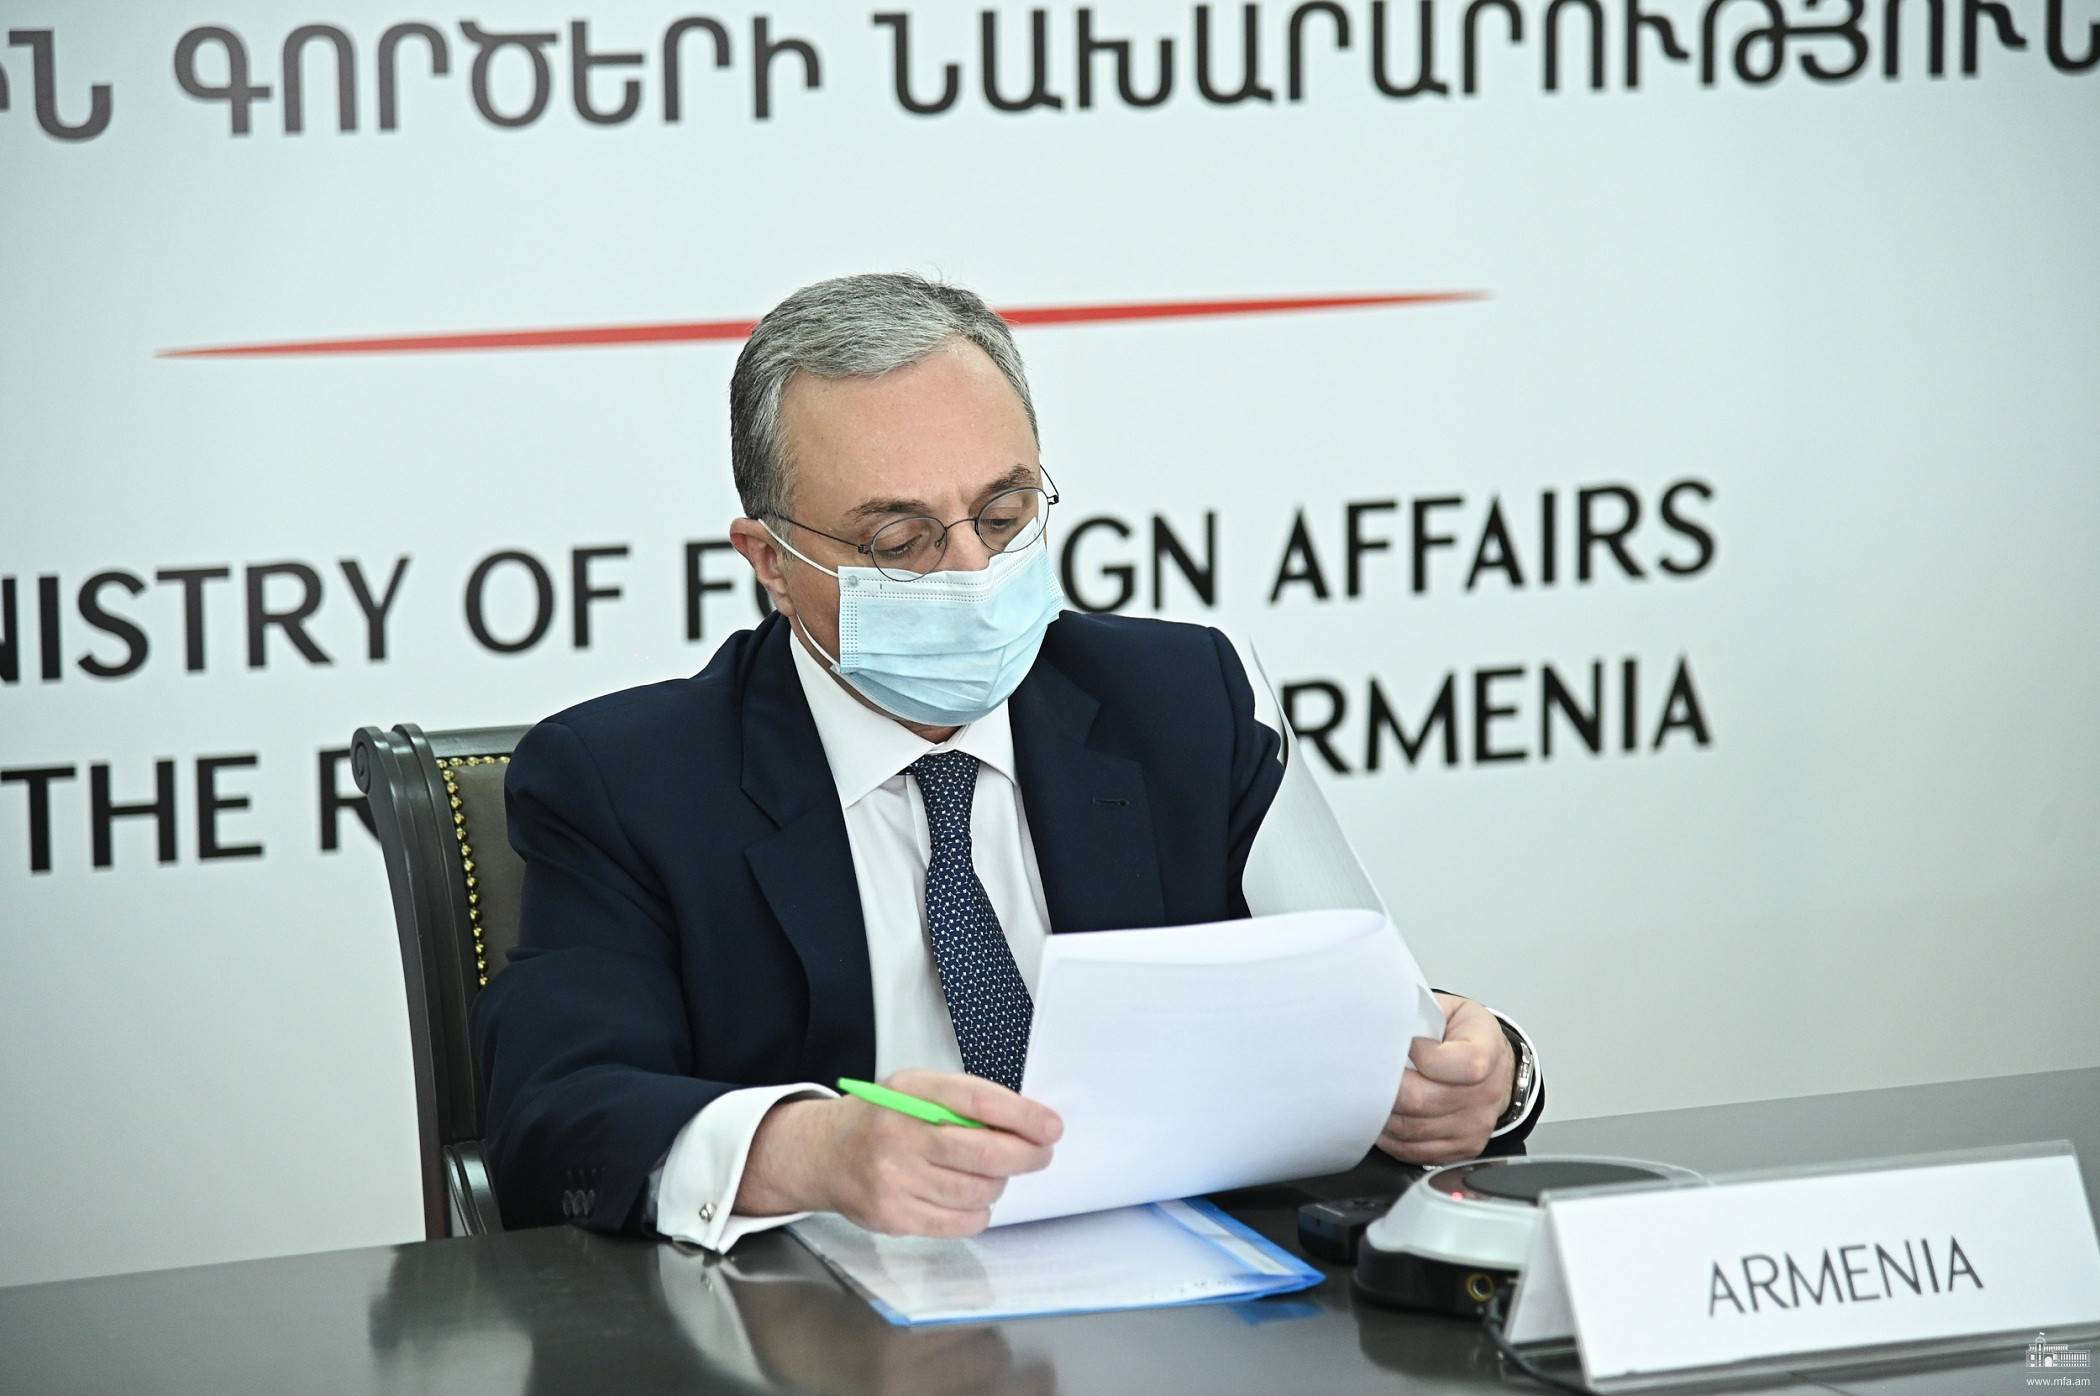 ЕС продолжает оставаться очень важным партнером для Армении во всех областях – Мнацаканян 